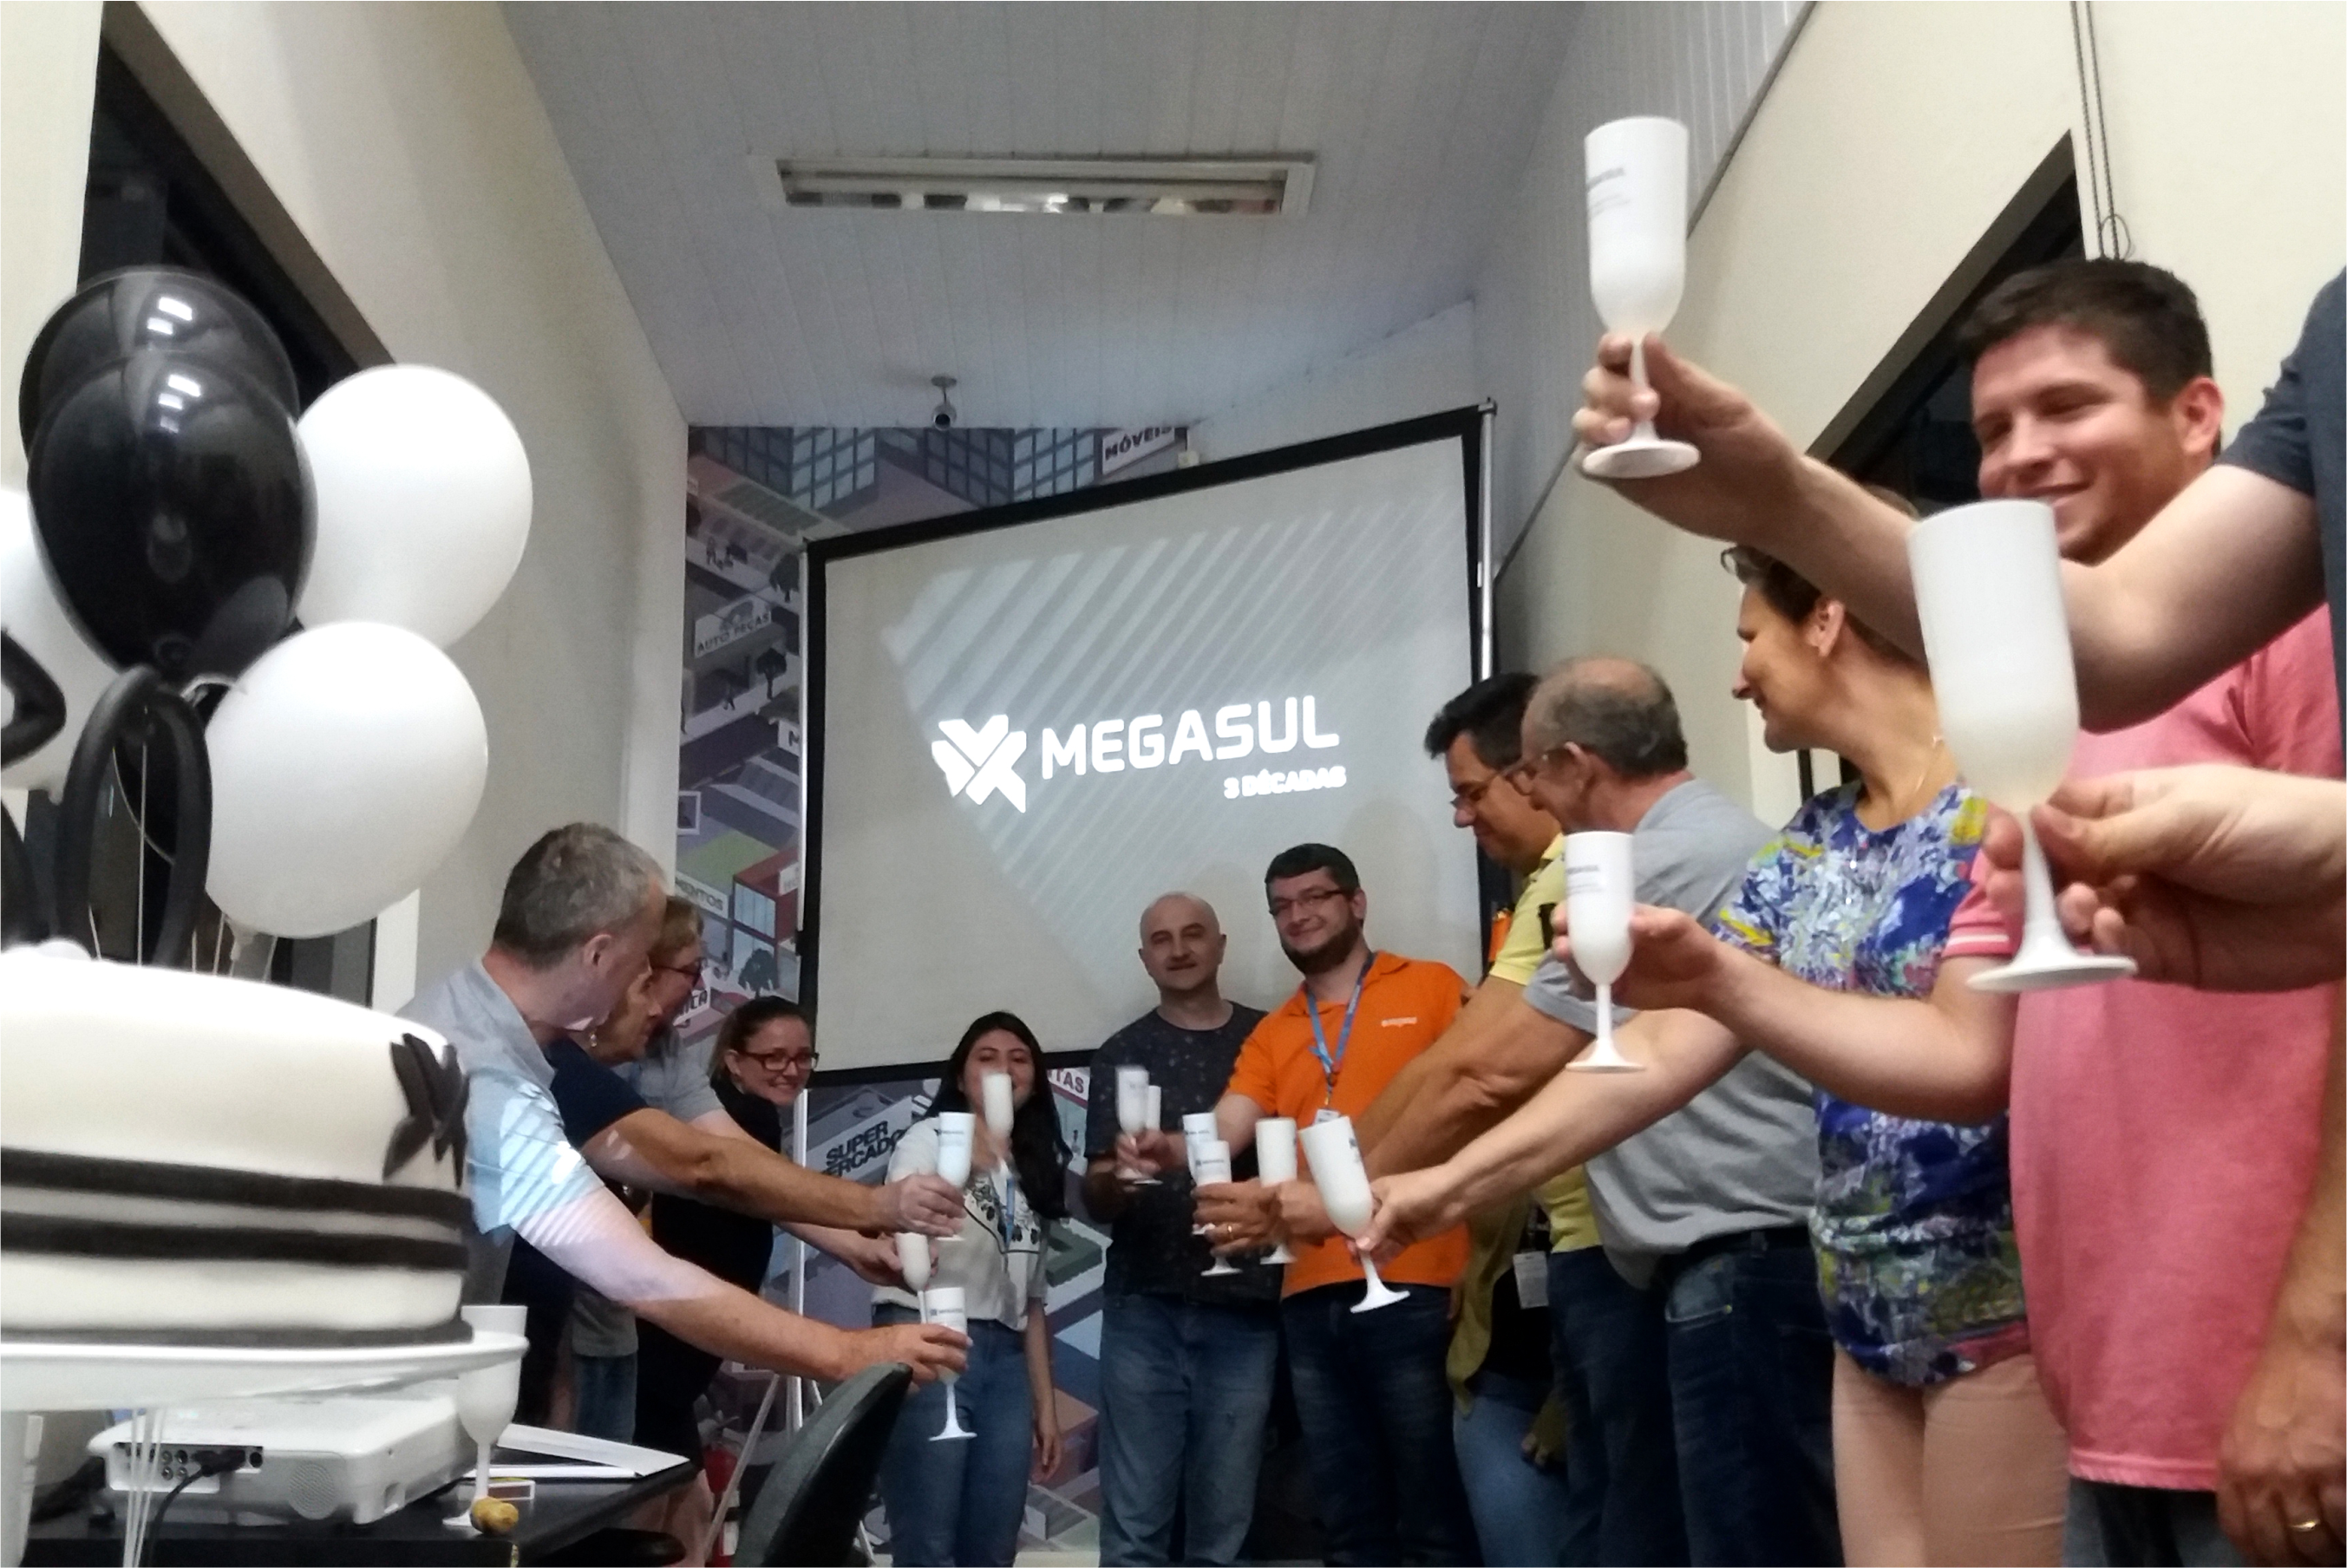 Megasul comemora 3 décadas desenvolvendo tecnologias para a evolução dos varejistas